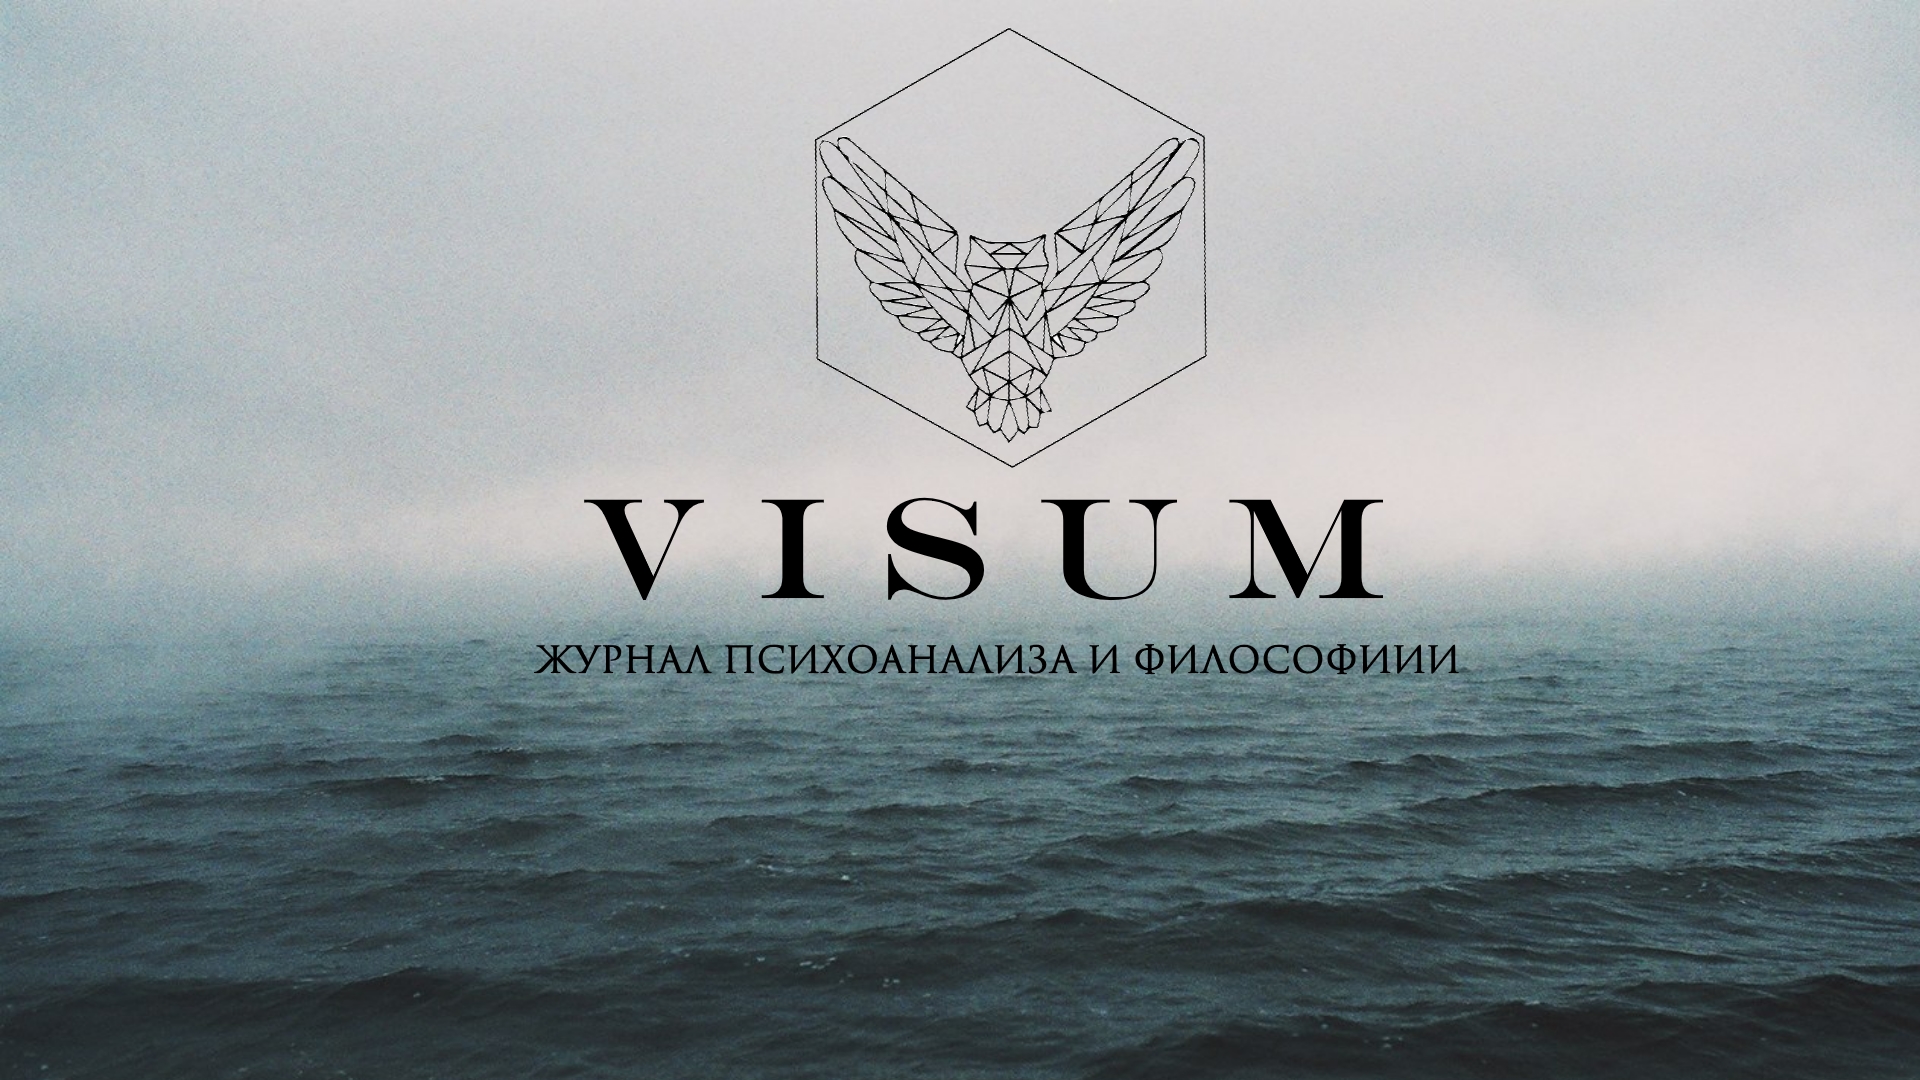 О Журнале "Visum"